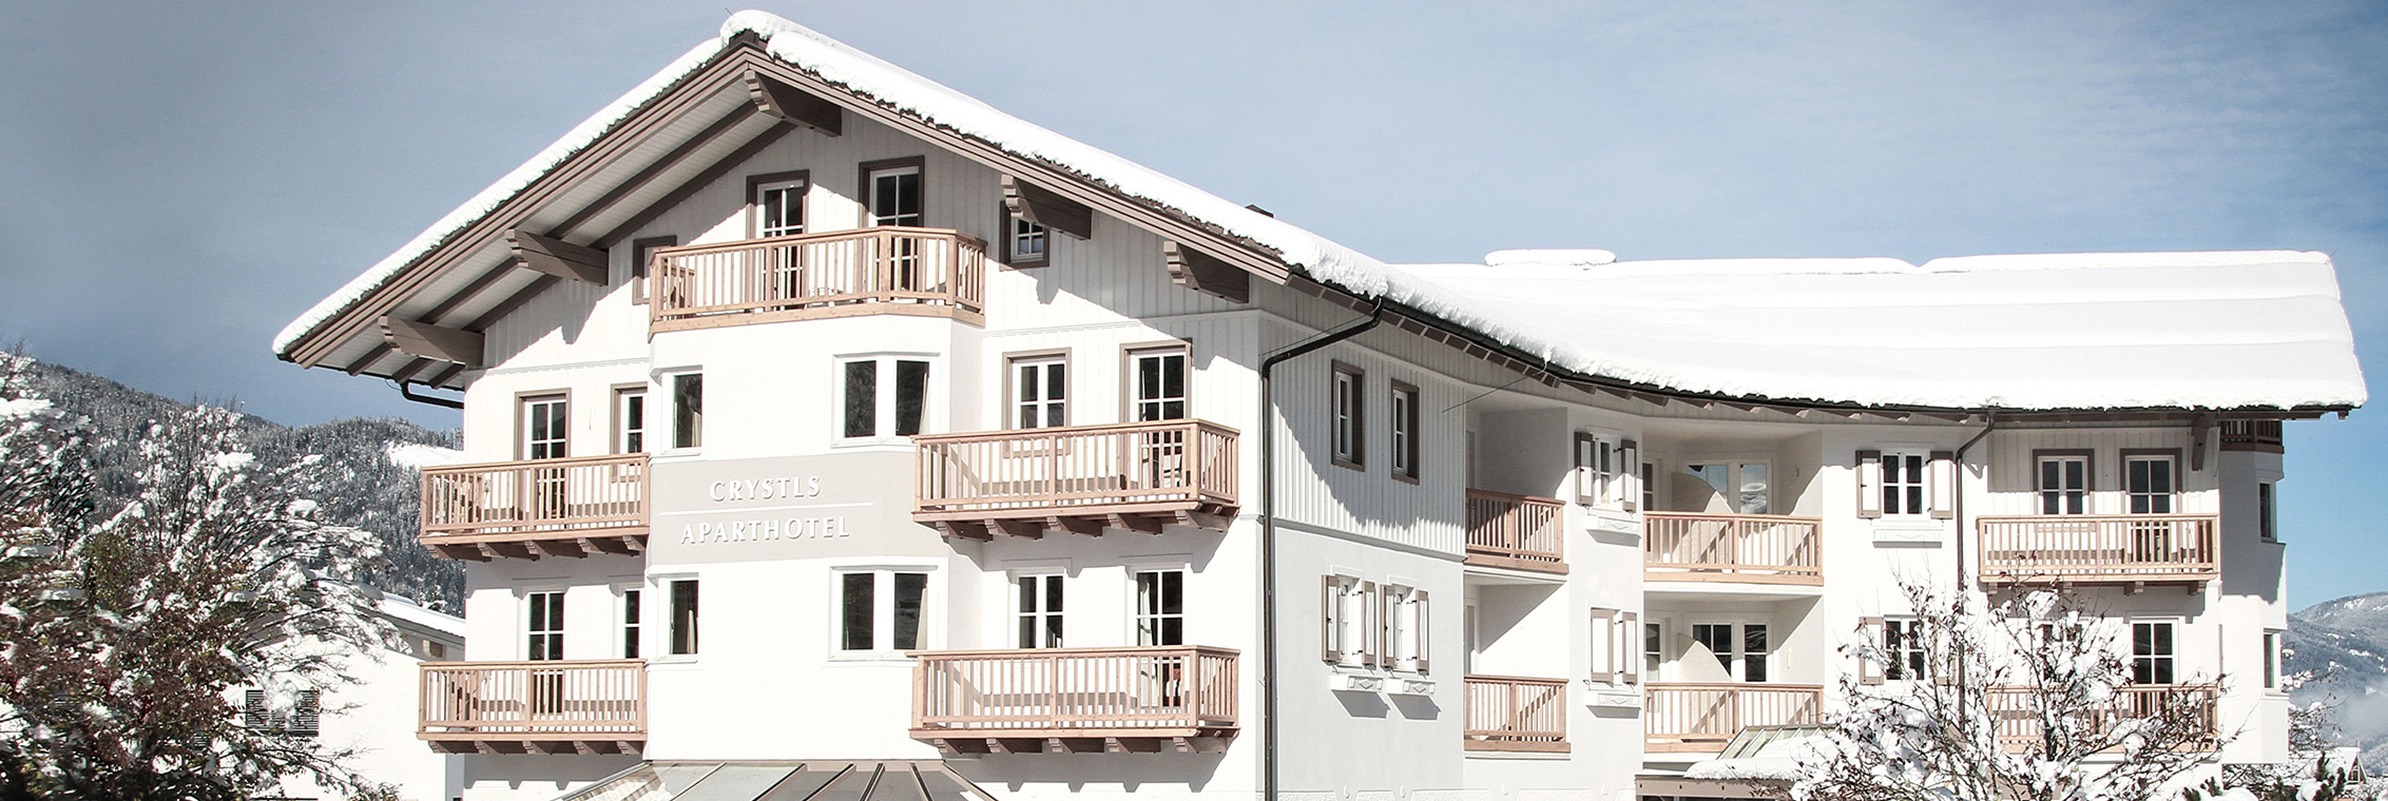 Perfekte Unterkunft für Winterurlaub Vorteile Selbstversorger All-Inklusive Flachau1 Flachau Salzburg Ski amadé